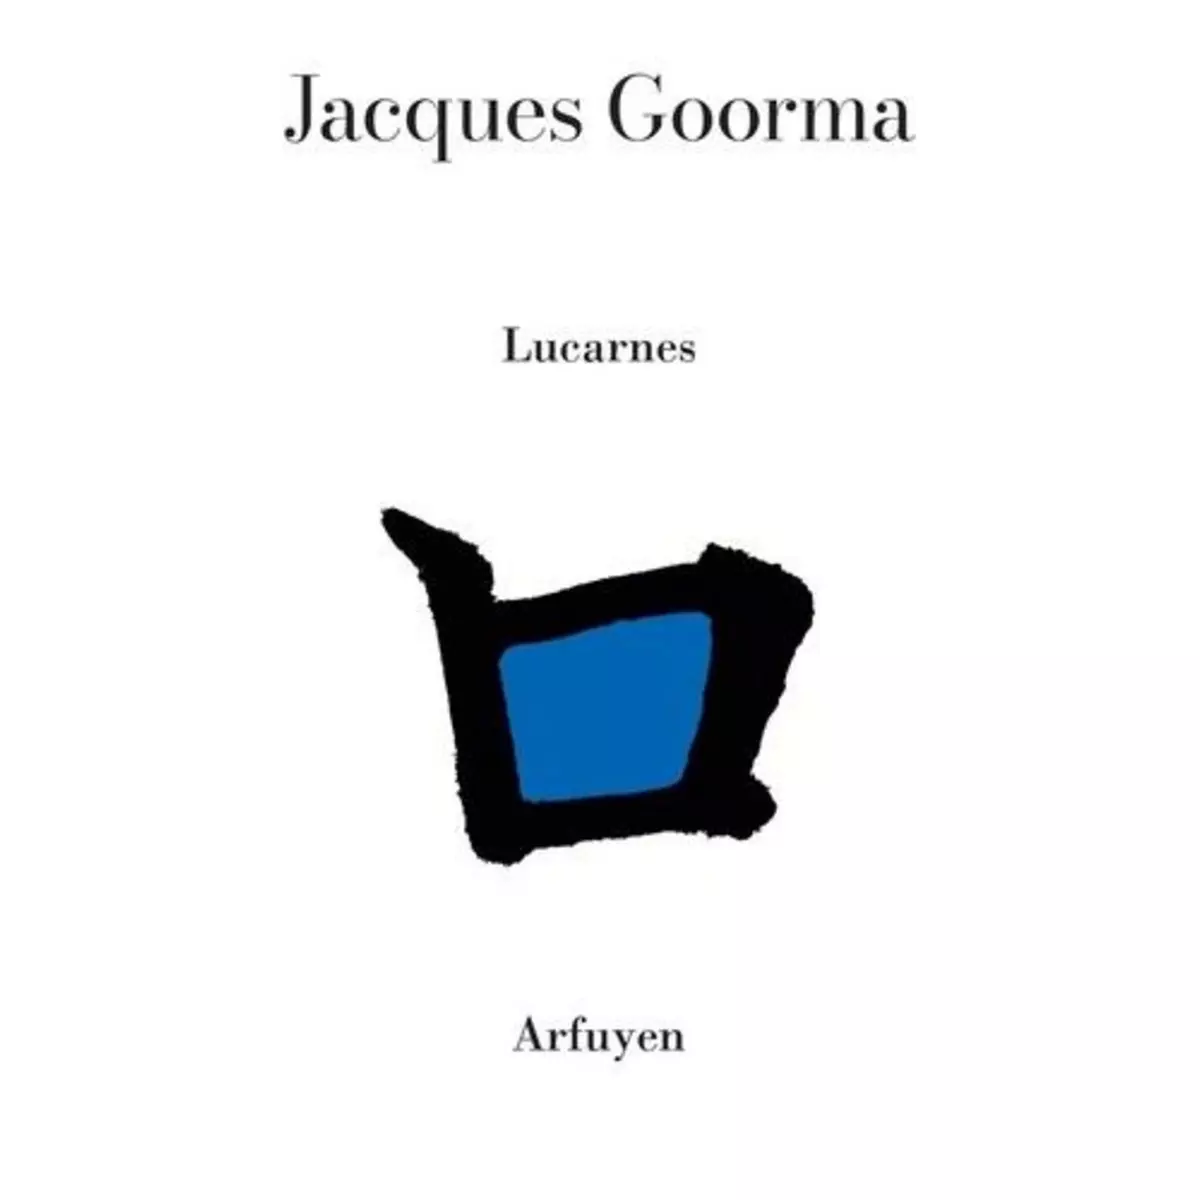  LUCARNES, Goorma Jacques